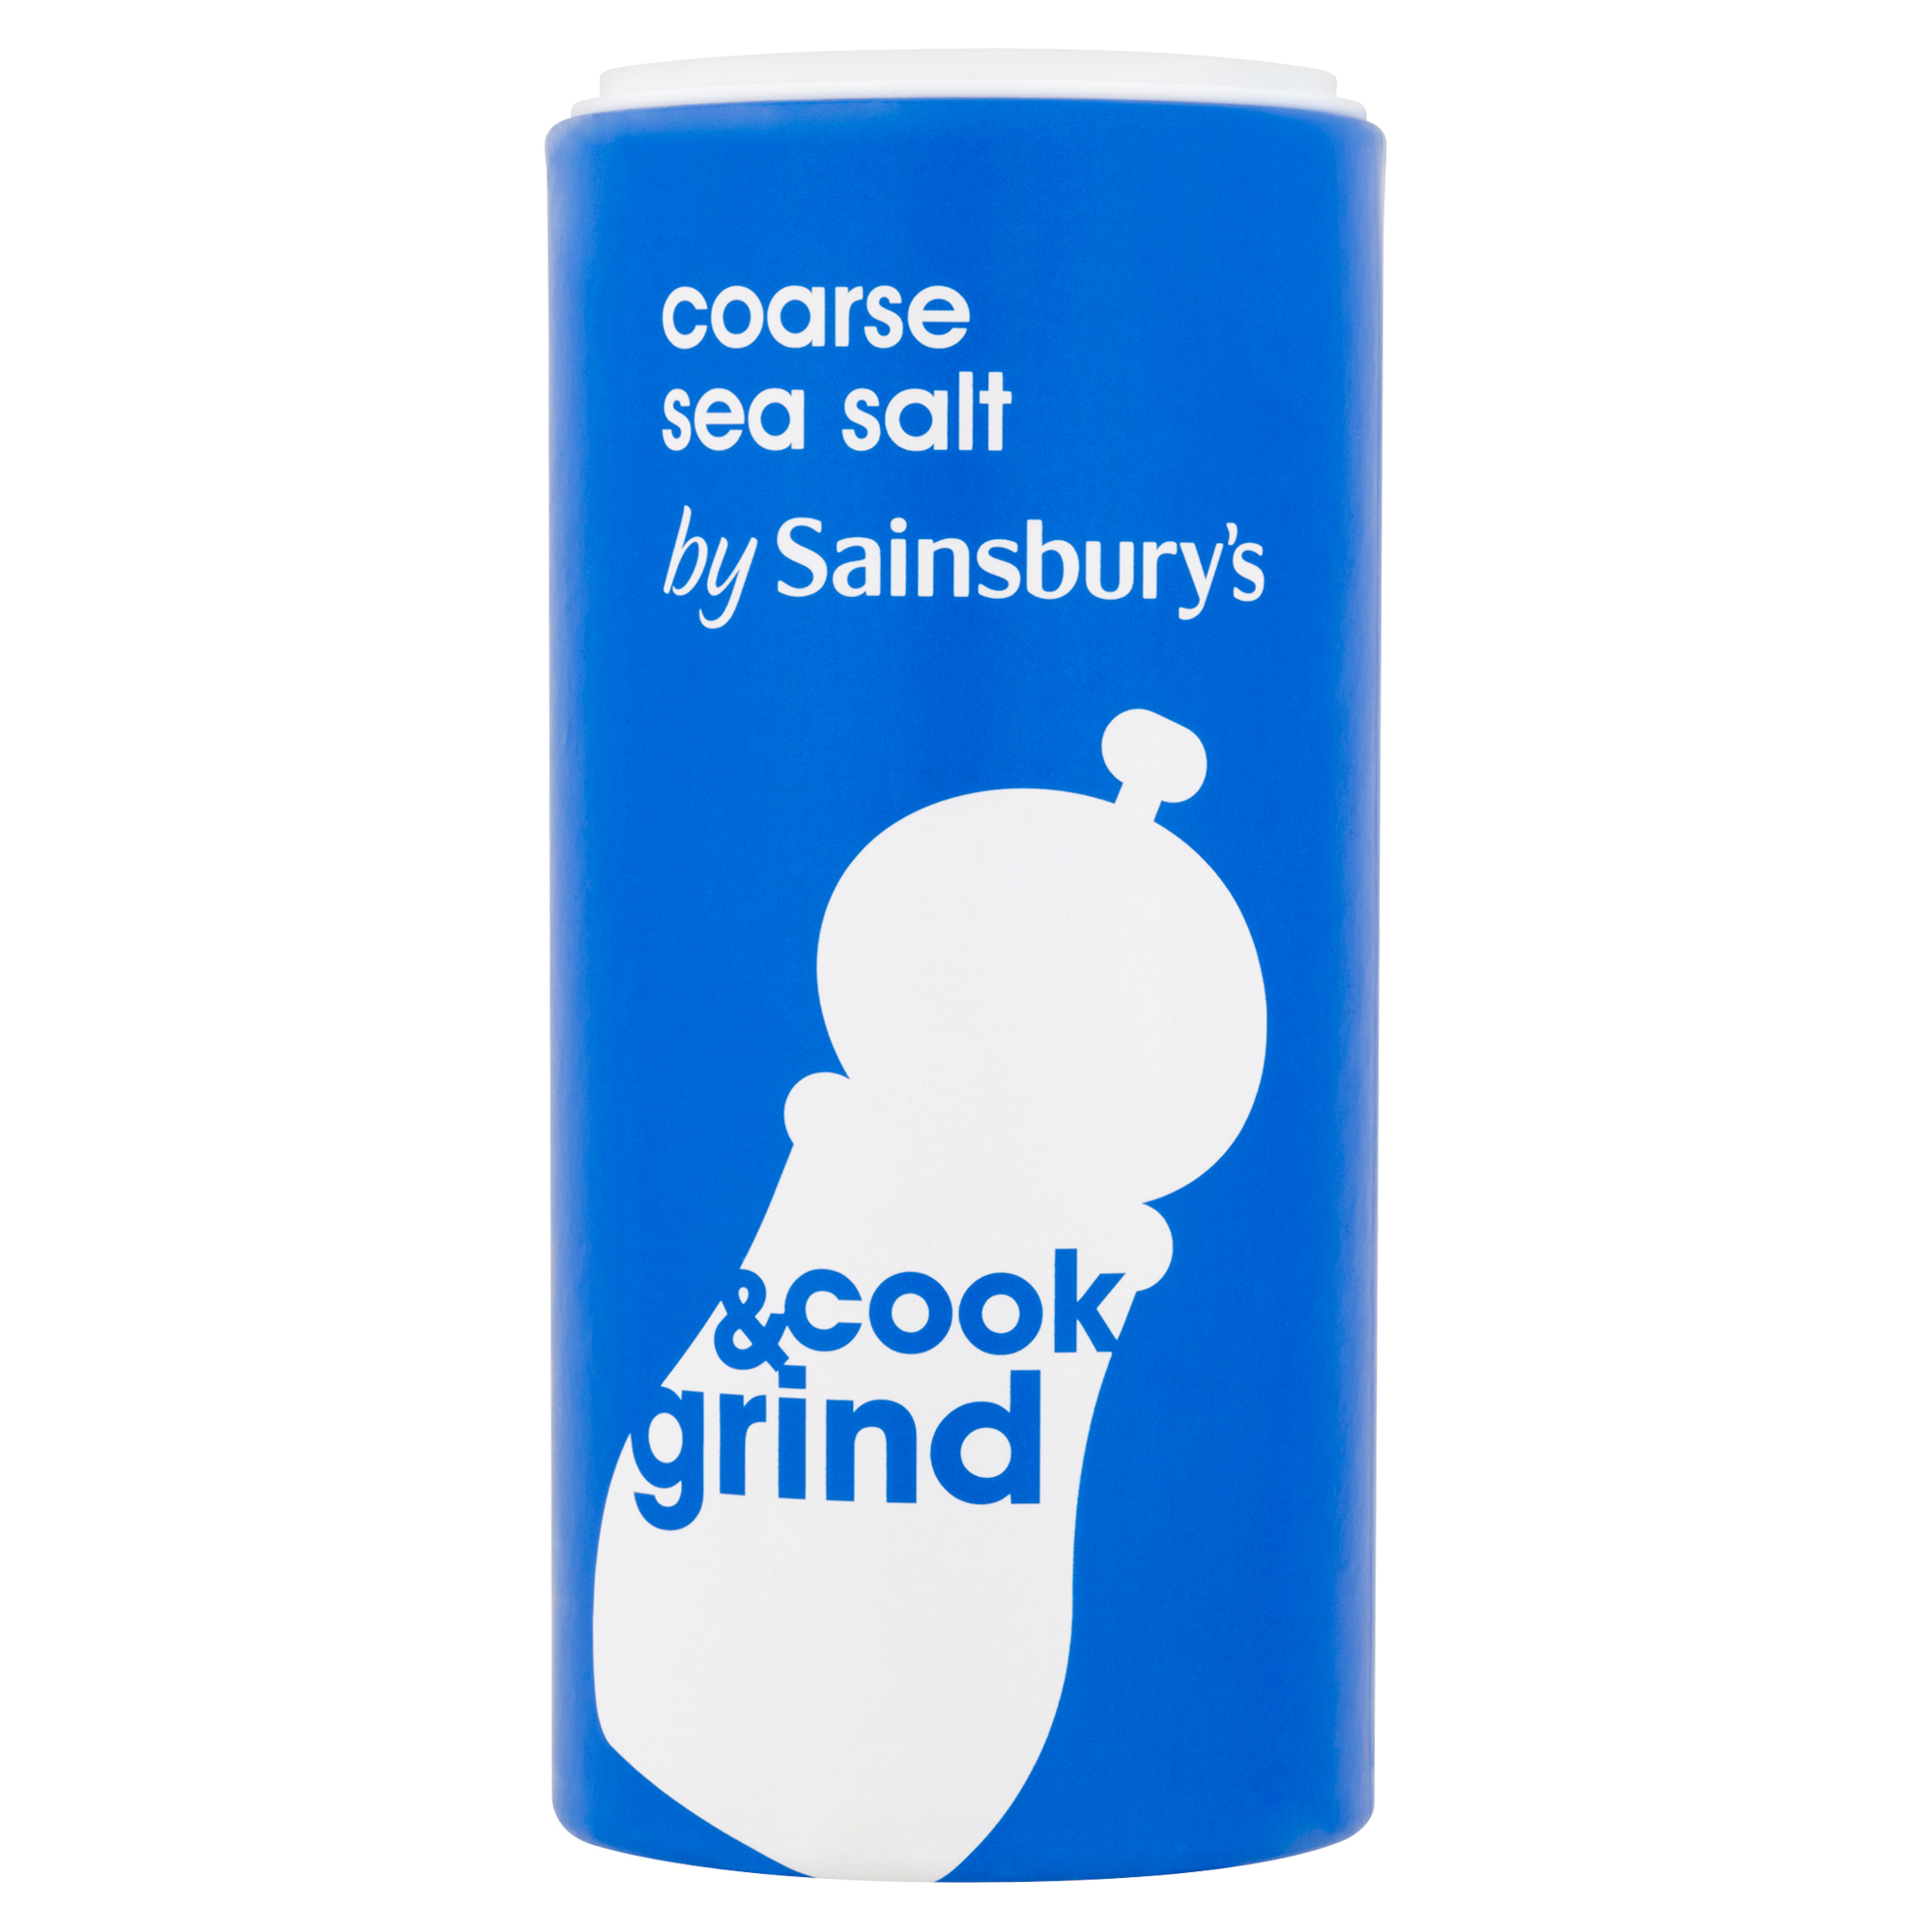 Celtic Sea Salt - Coarse 600g